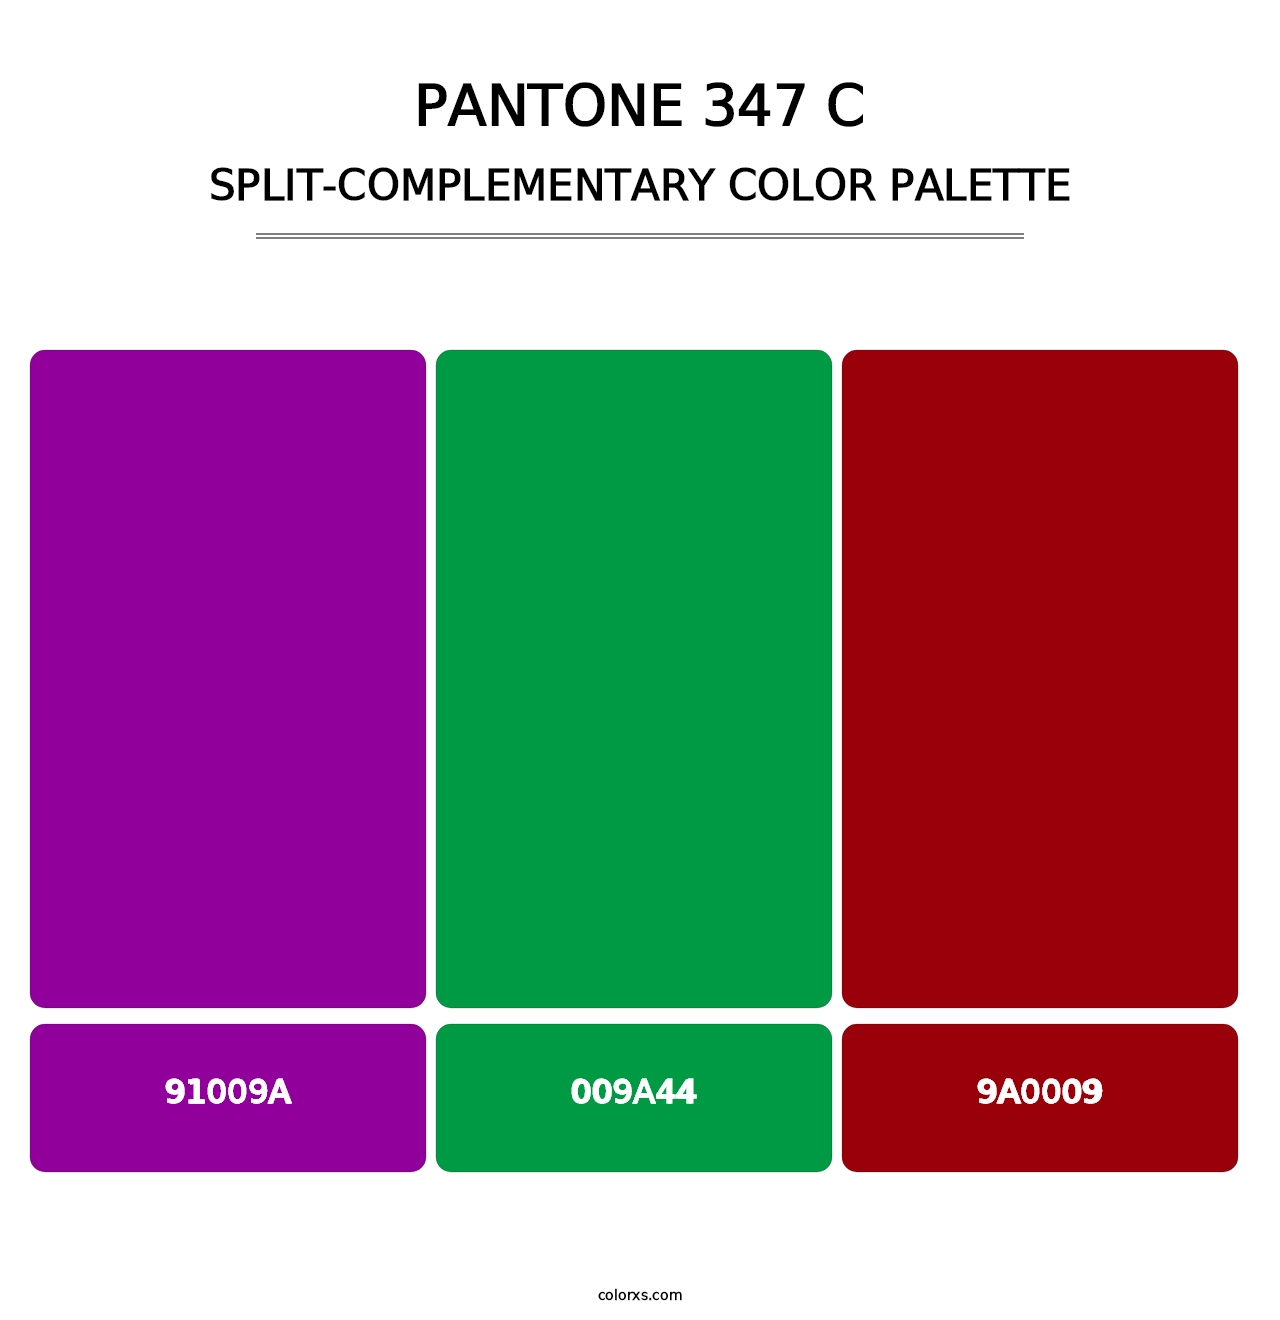 PANTONE 347 C - Split-Complementary Color Palette